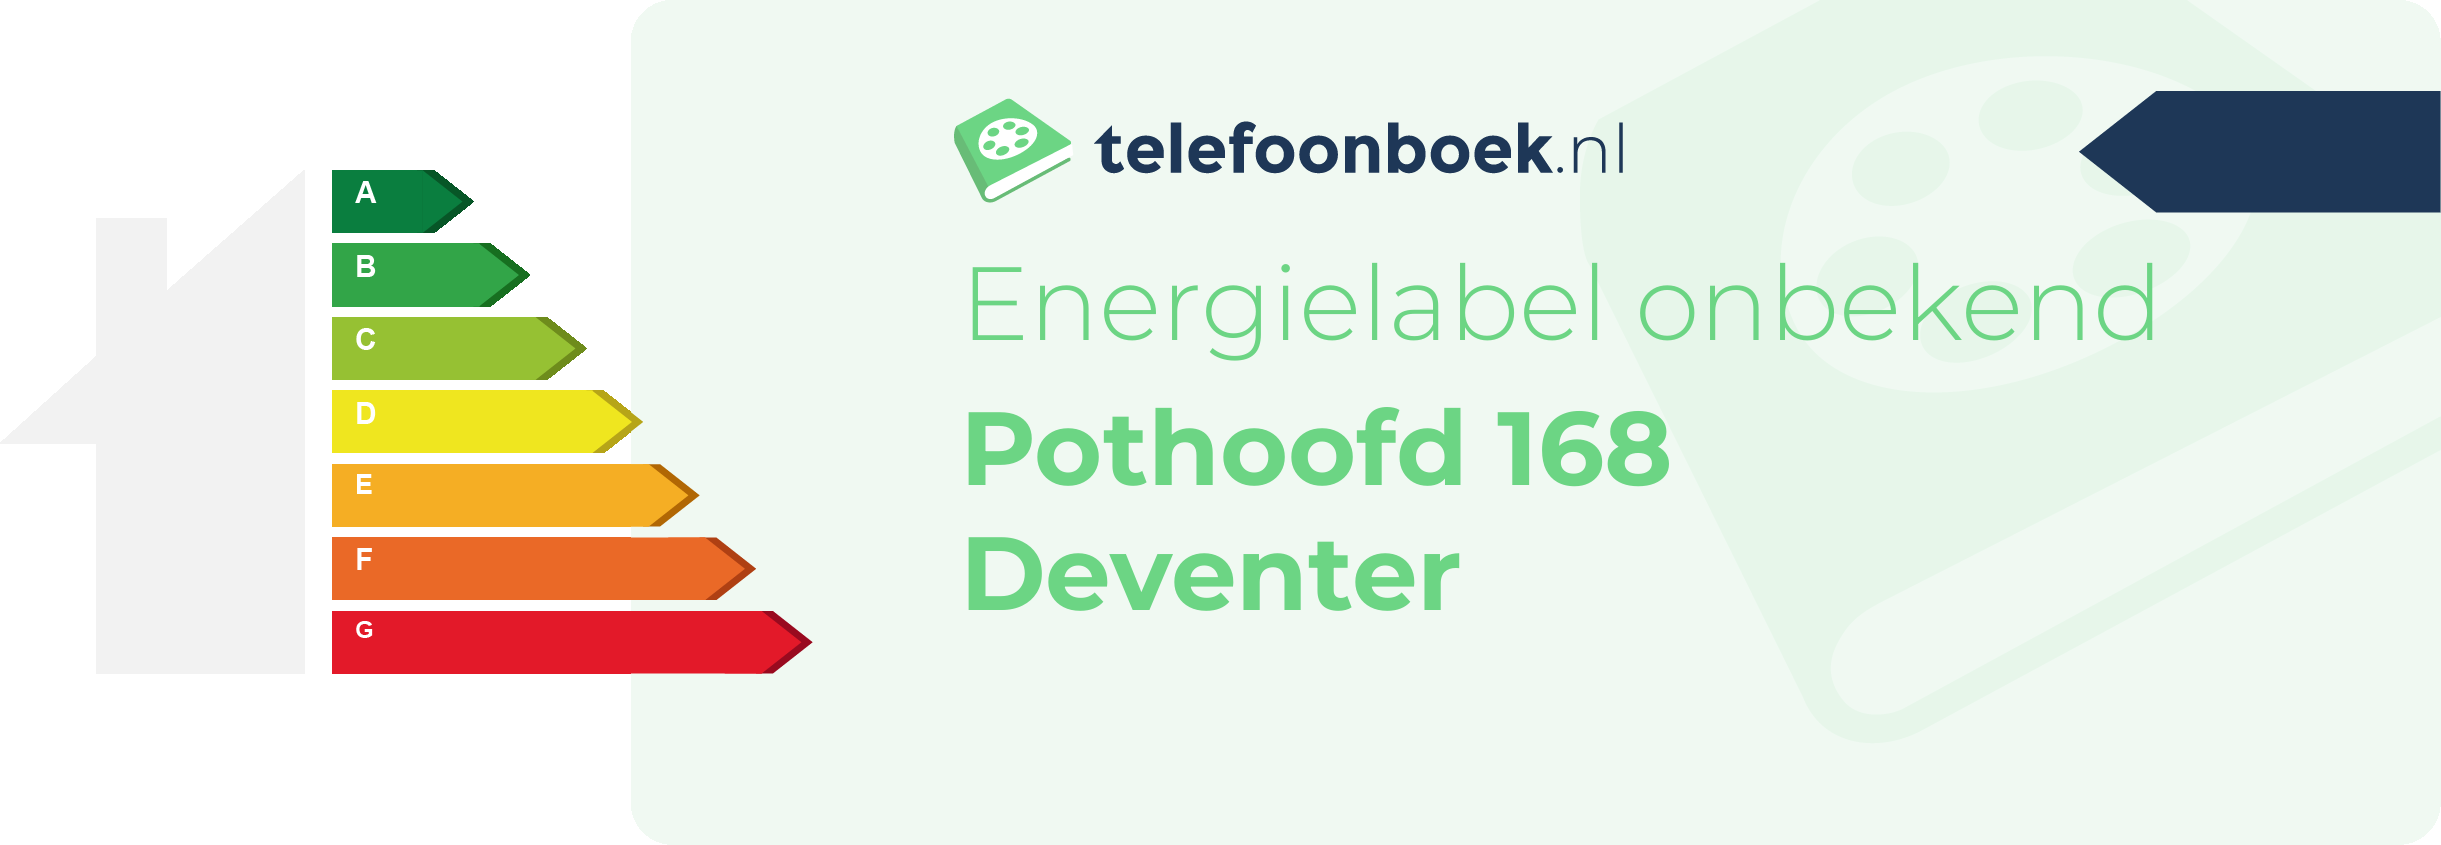 Energielabel Pothoofd 168 Deventer